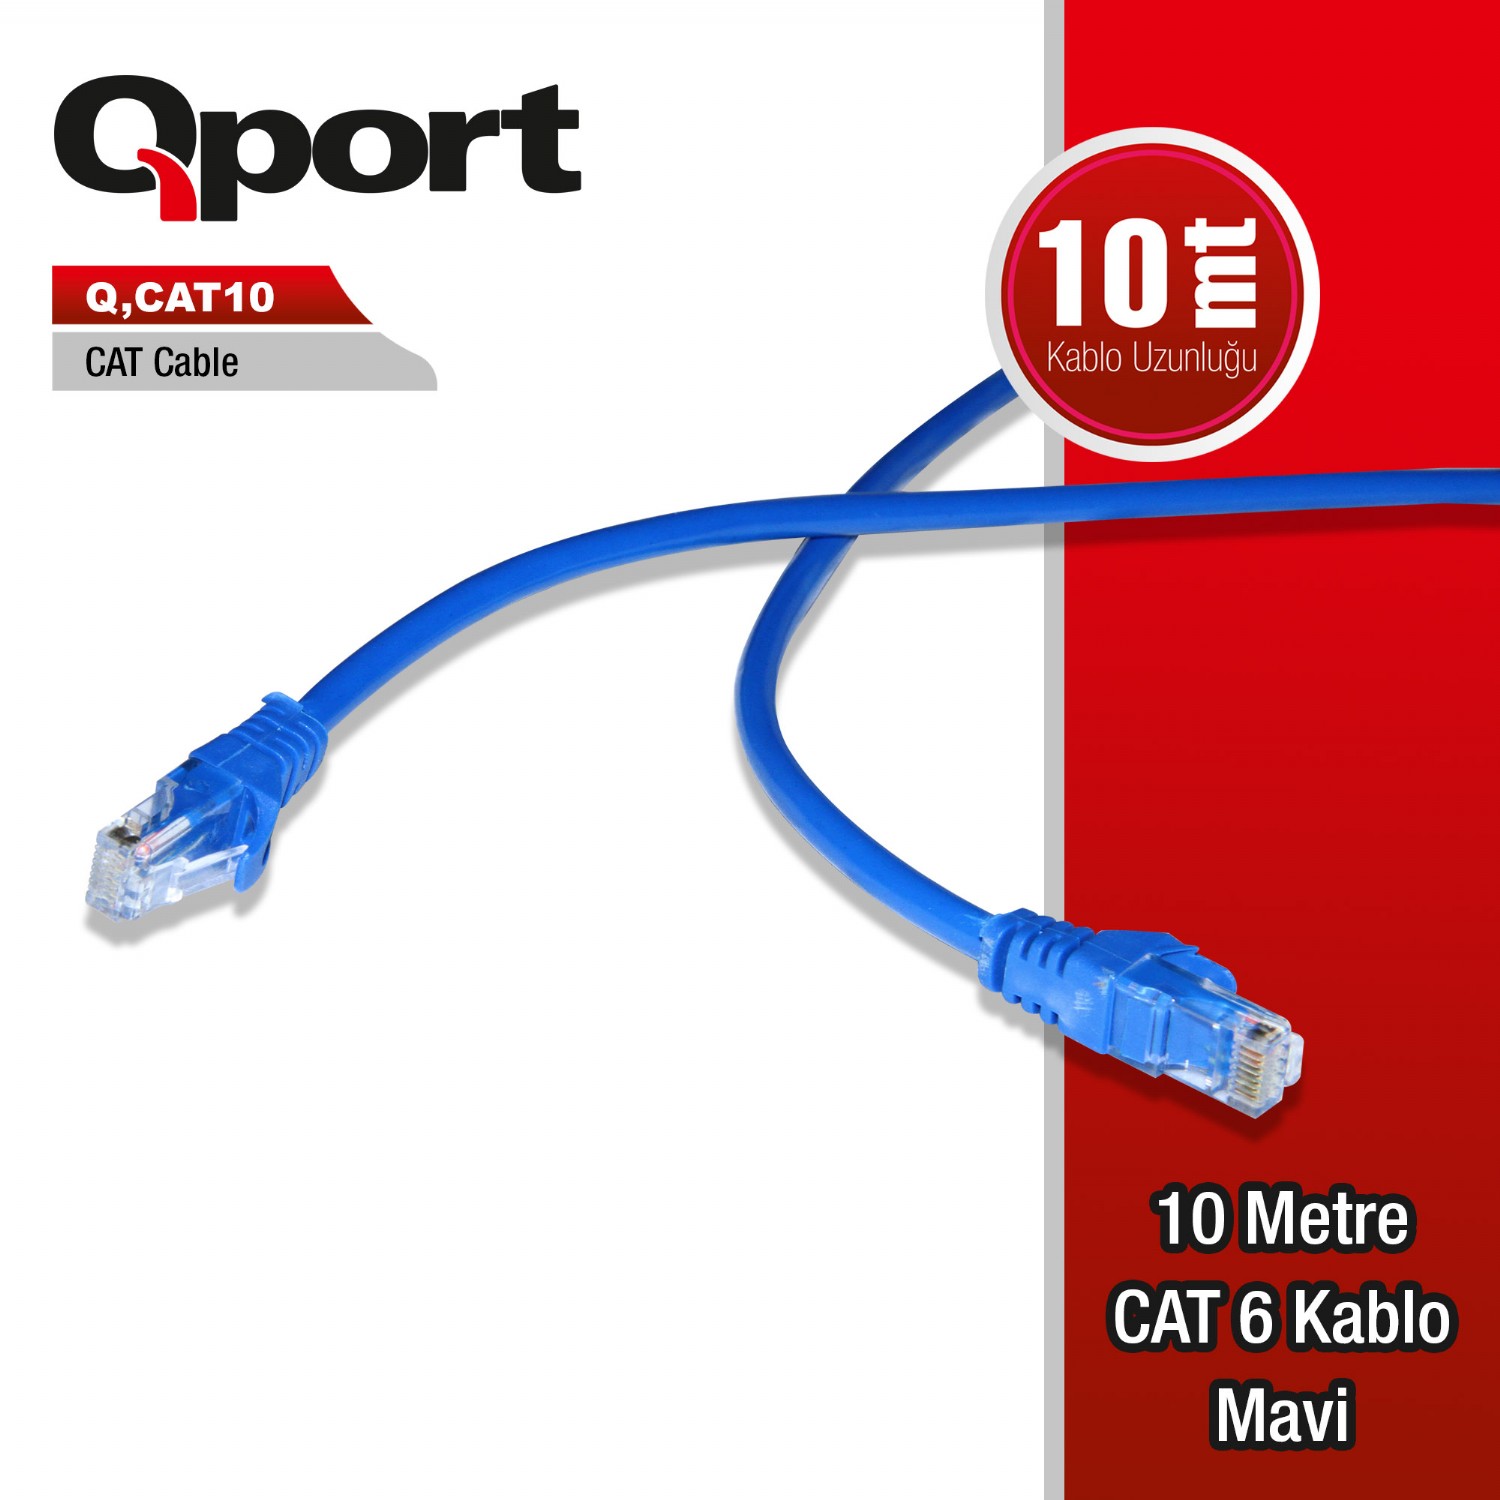 Q-CAT10